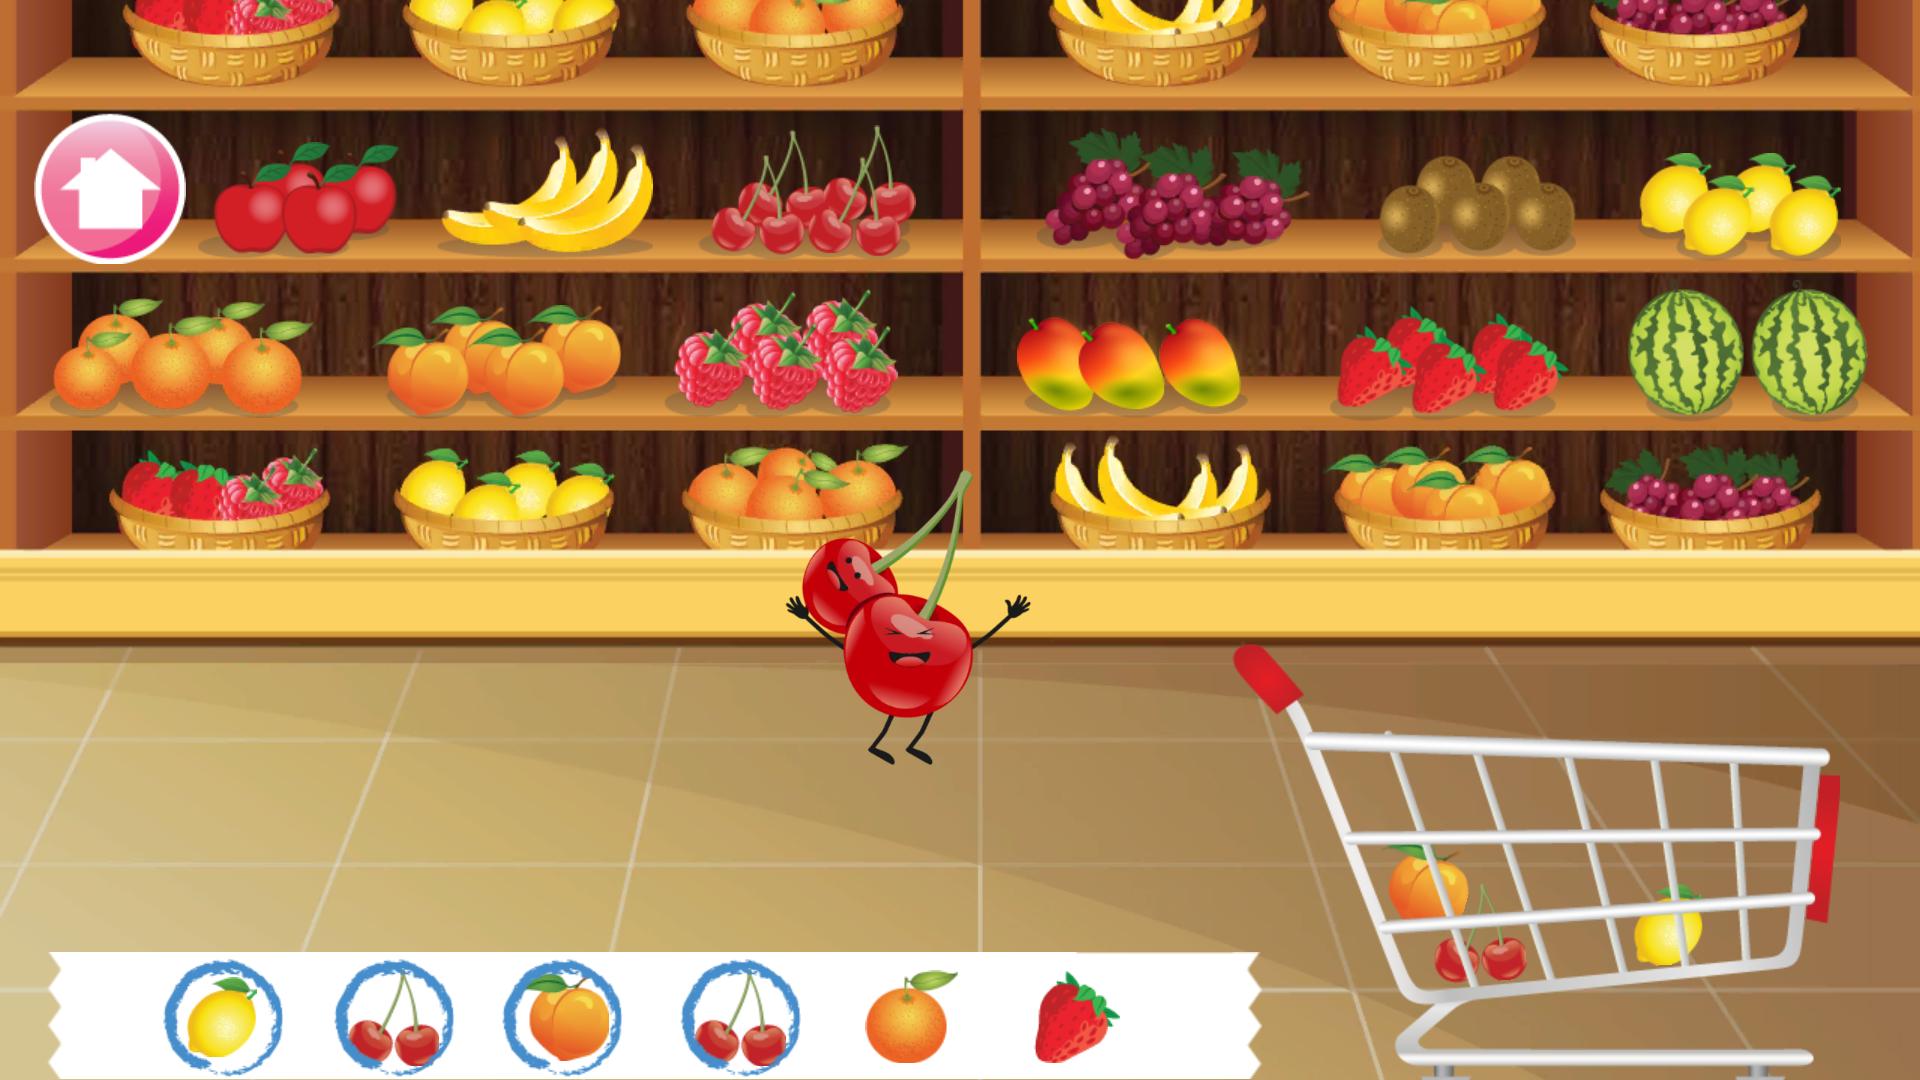 Блокс фрукт цены фруктов в трейде. Игра Vegetables. Игра на андроид магазин овощи. Вывеска овощи фрукты для игры в магазин в детском саду. Игра огород рынок.